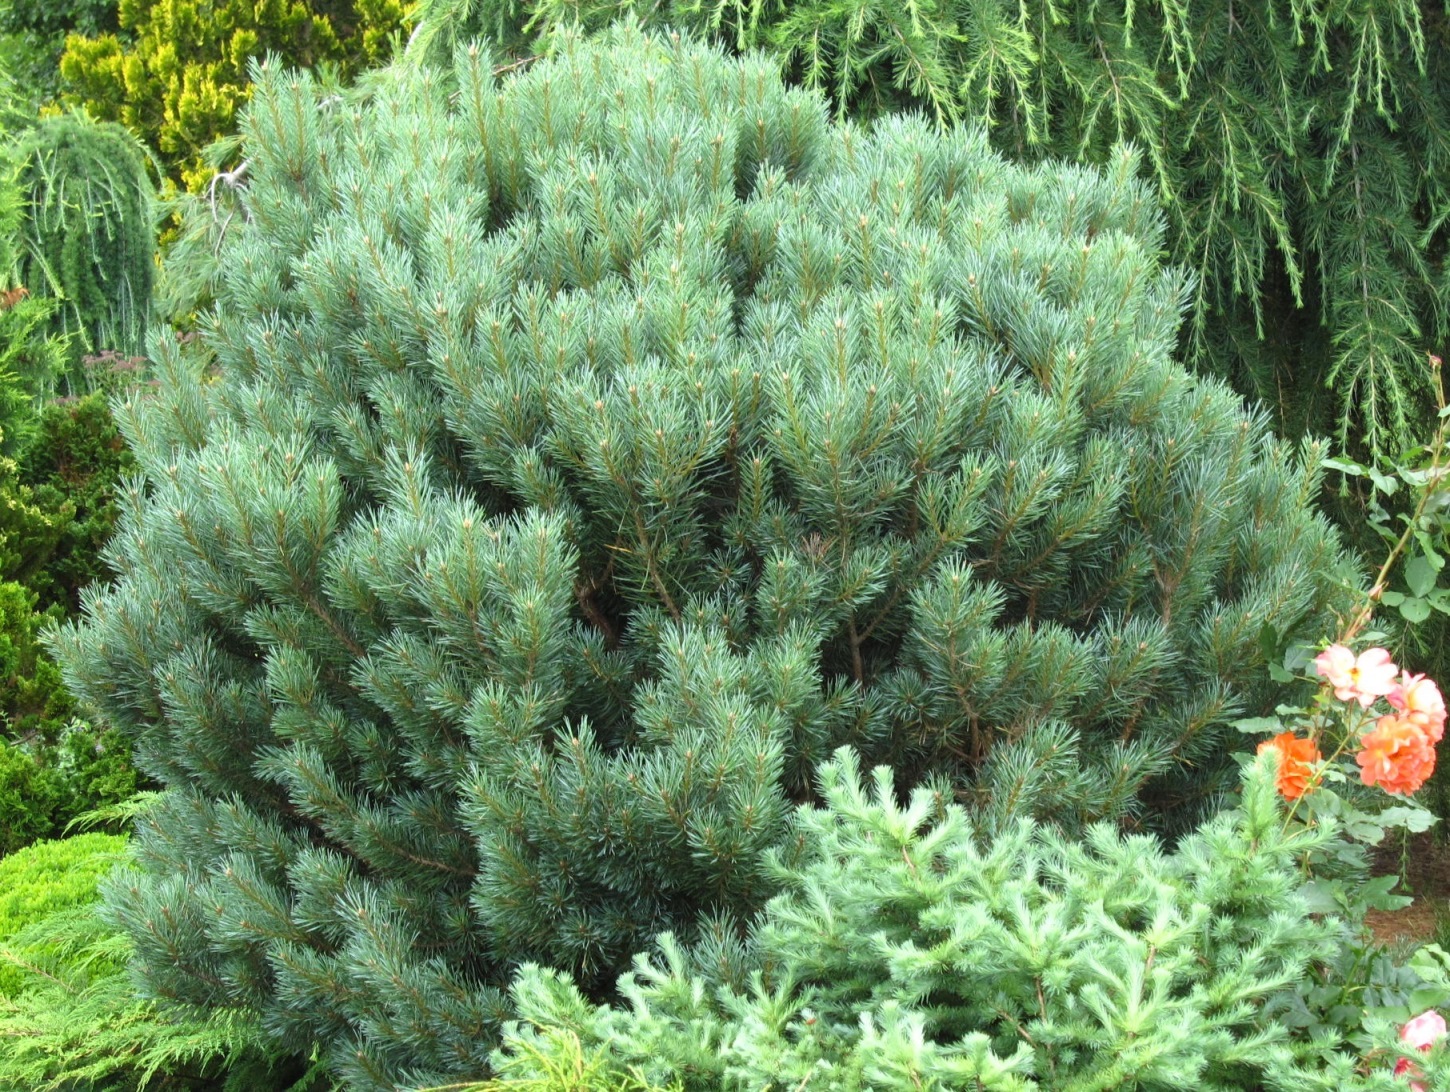 Pinus sylvestris `Watererii`, действительно, отличный сорт, декоративный и устойчивый, но… только в Европе. Anthony Waterer вывел его в конце 19-го века в Англии на основе шотландского экотипа сосны обыкновенной (8-я зона USDA). У нас от 1-ой до 3-ей зоны! Растения не тратят ресурсы на адаптацию к тем негативным факторам, которых нет в местах обитания популяции. 